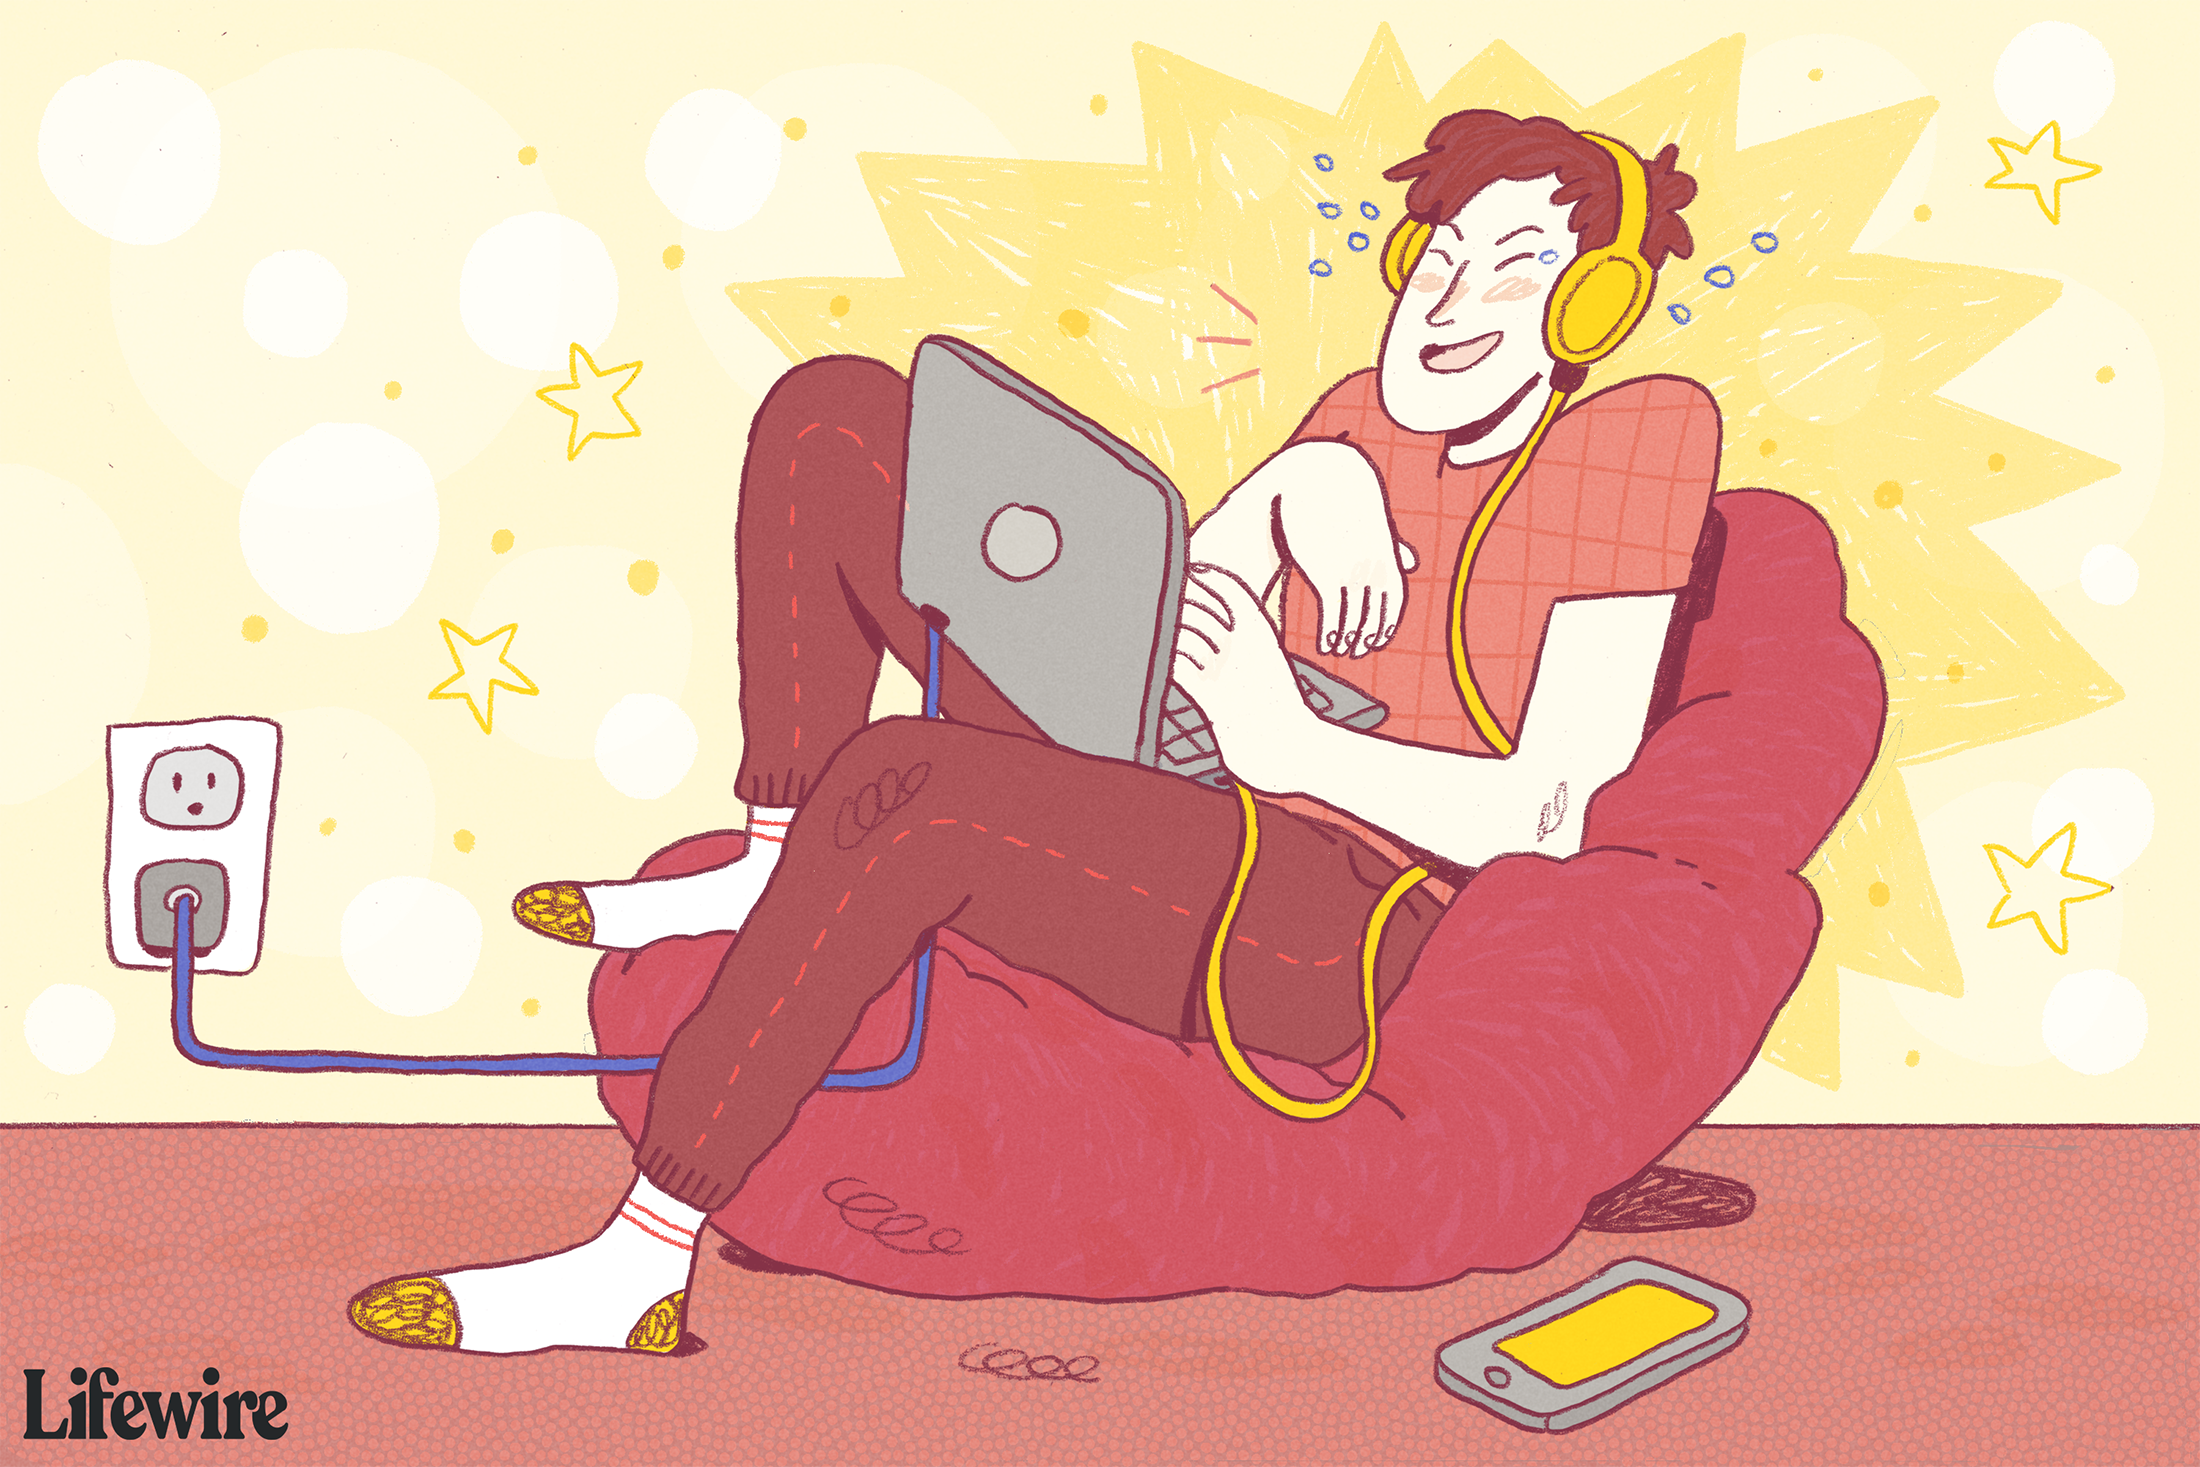 Ilustração de um jovem sentado em um laptop usando fones de ouvido do tipo Beats e rindo